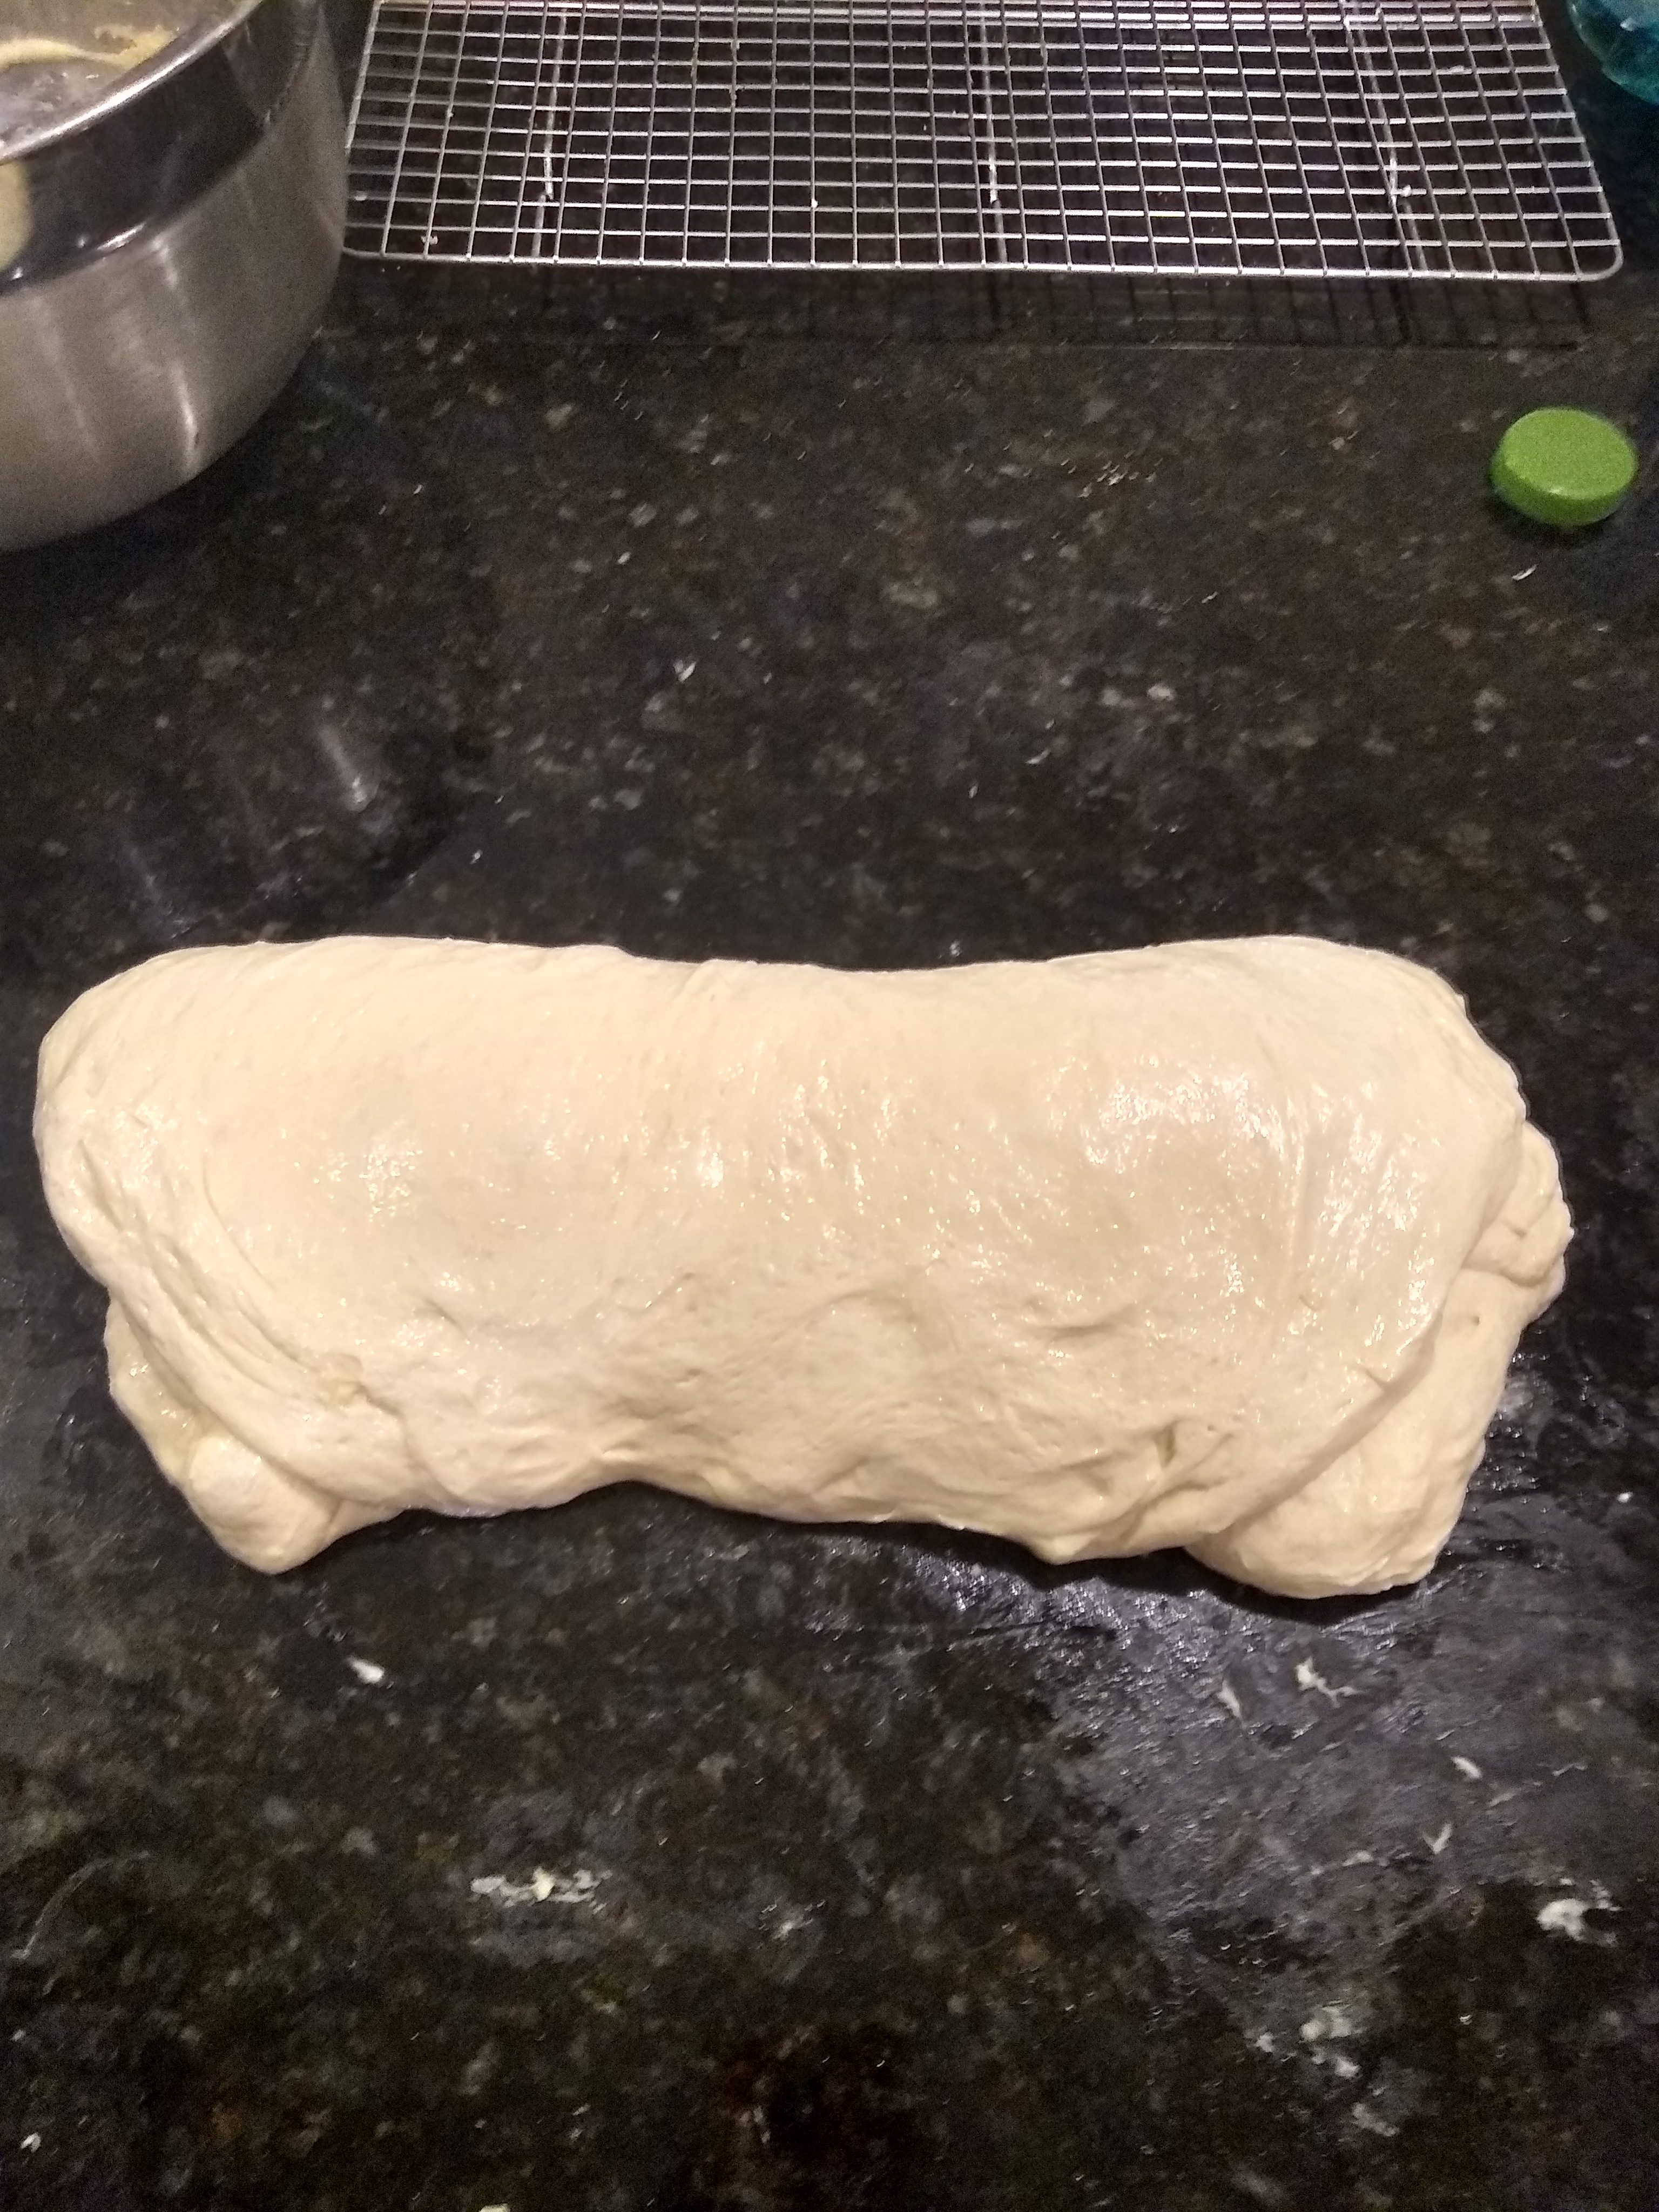 Foccacia dough